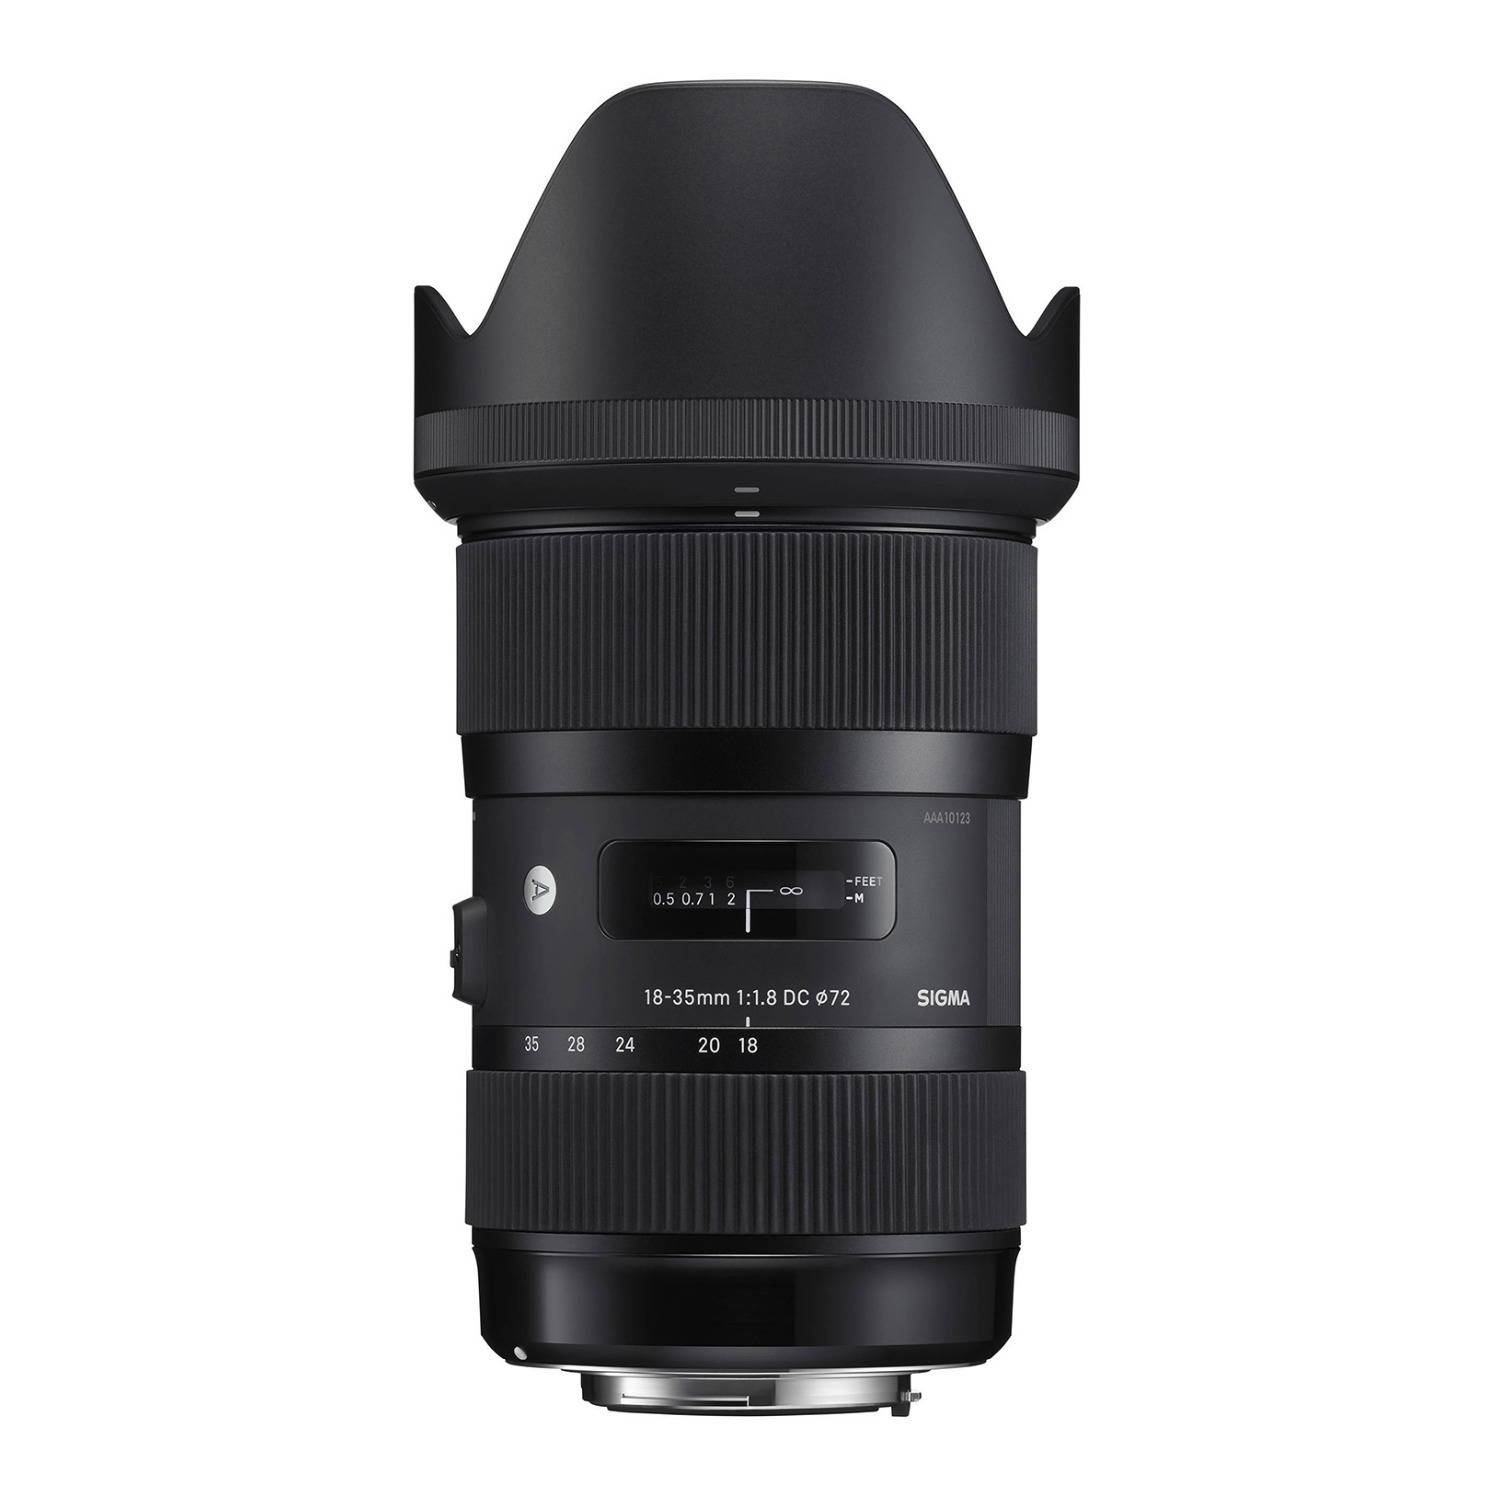 Sigma 18-35mm f/1.8 DC HSM Art Lens for Nikon DSLR Cameras